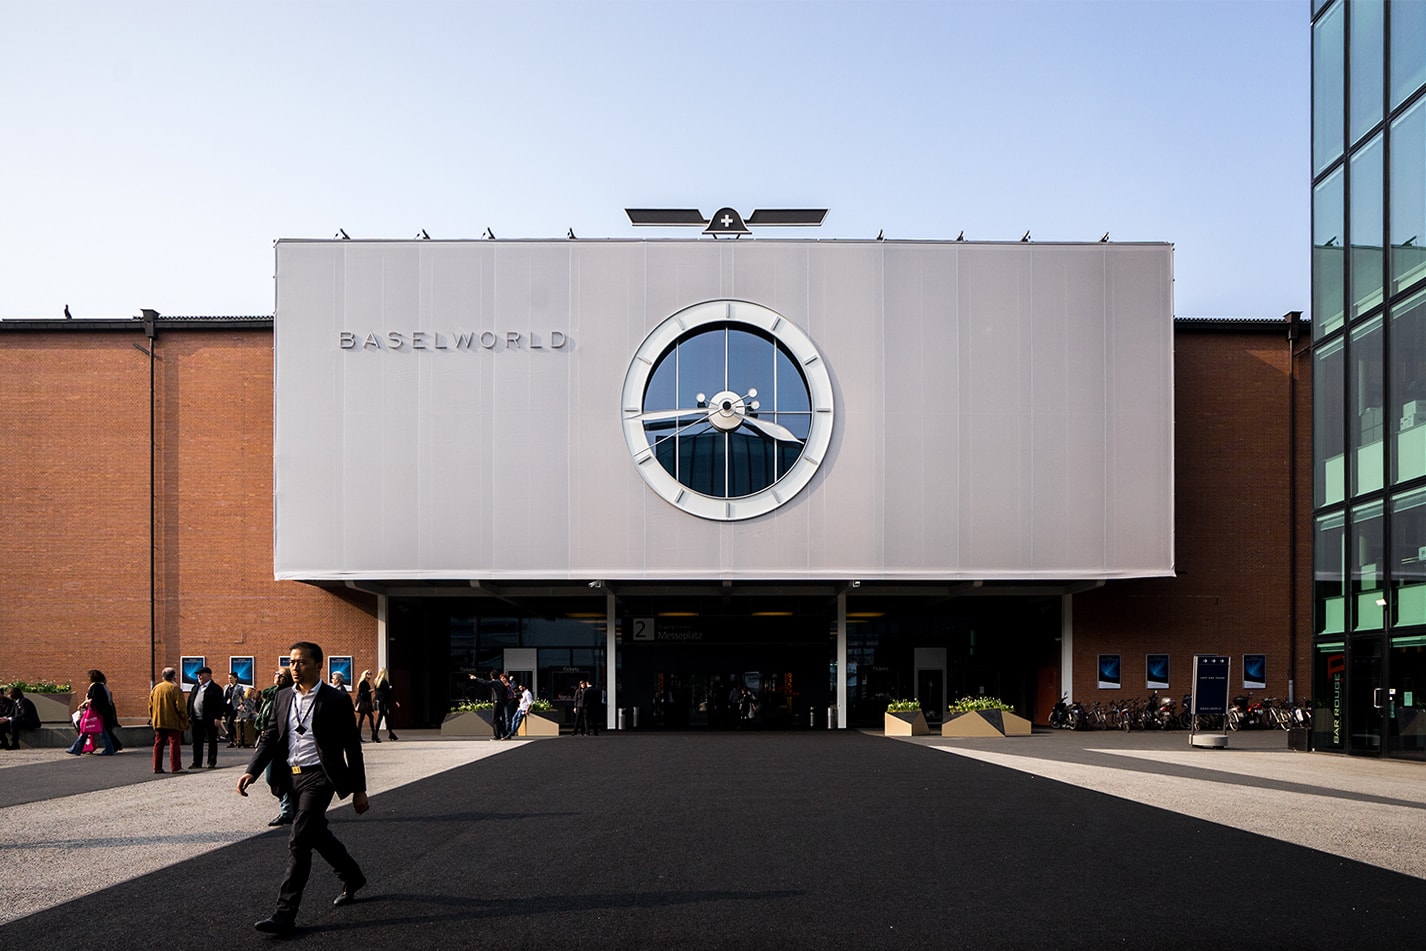 時計業界最大手 Swatch Group が Basel World 2019 の出展取り止めを発表 〈Hermès〉や〈BREITLING〉の出展取り止めが引き金となり、世界最大の時計宝飾フェアの存続が危機的状態に OMEGA オメガ Breguet ブレゲ Hamilton ハミルトン Swatch Group スウォッチ グループ Basel World 2019 Nick Hayek ニック・ハイエック Hermes エルメス BREITLING ブライトリング HYPEBEAST ハイプビースト